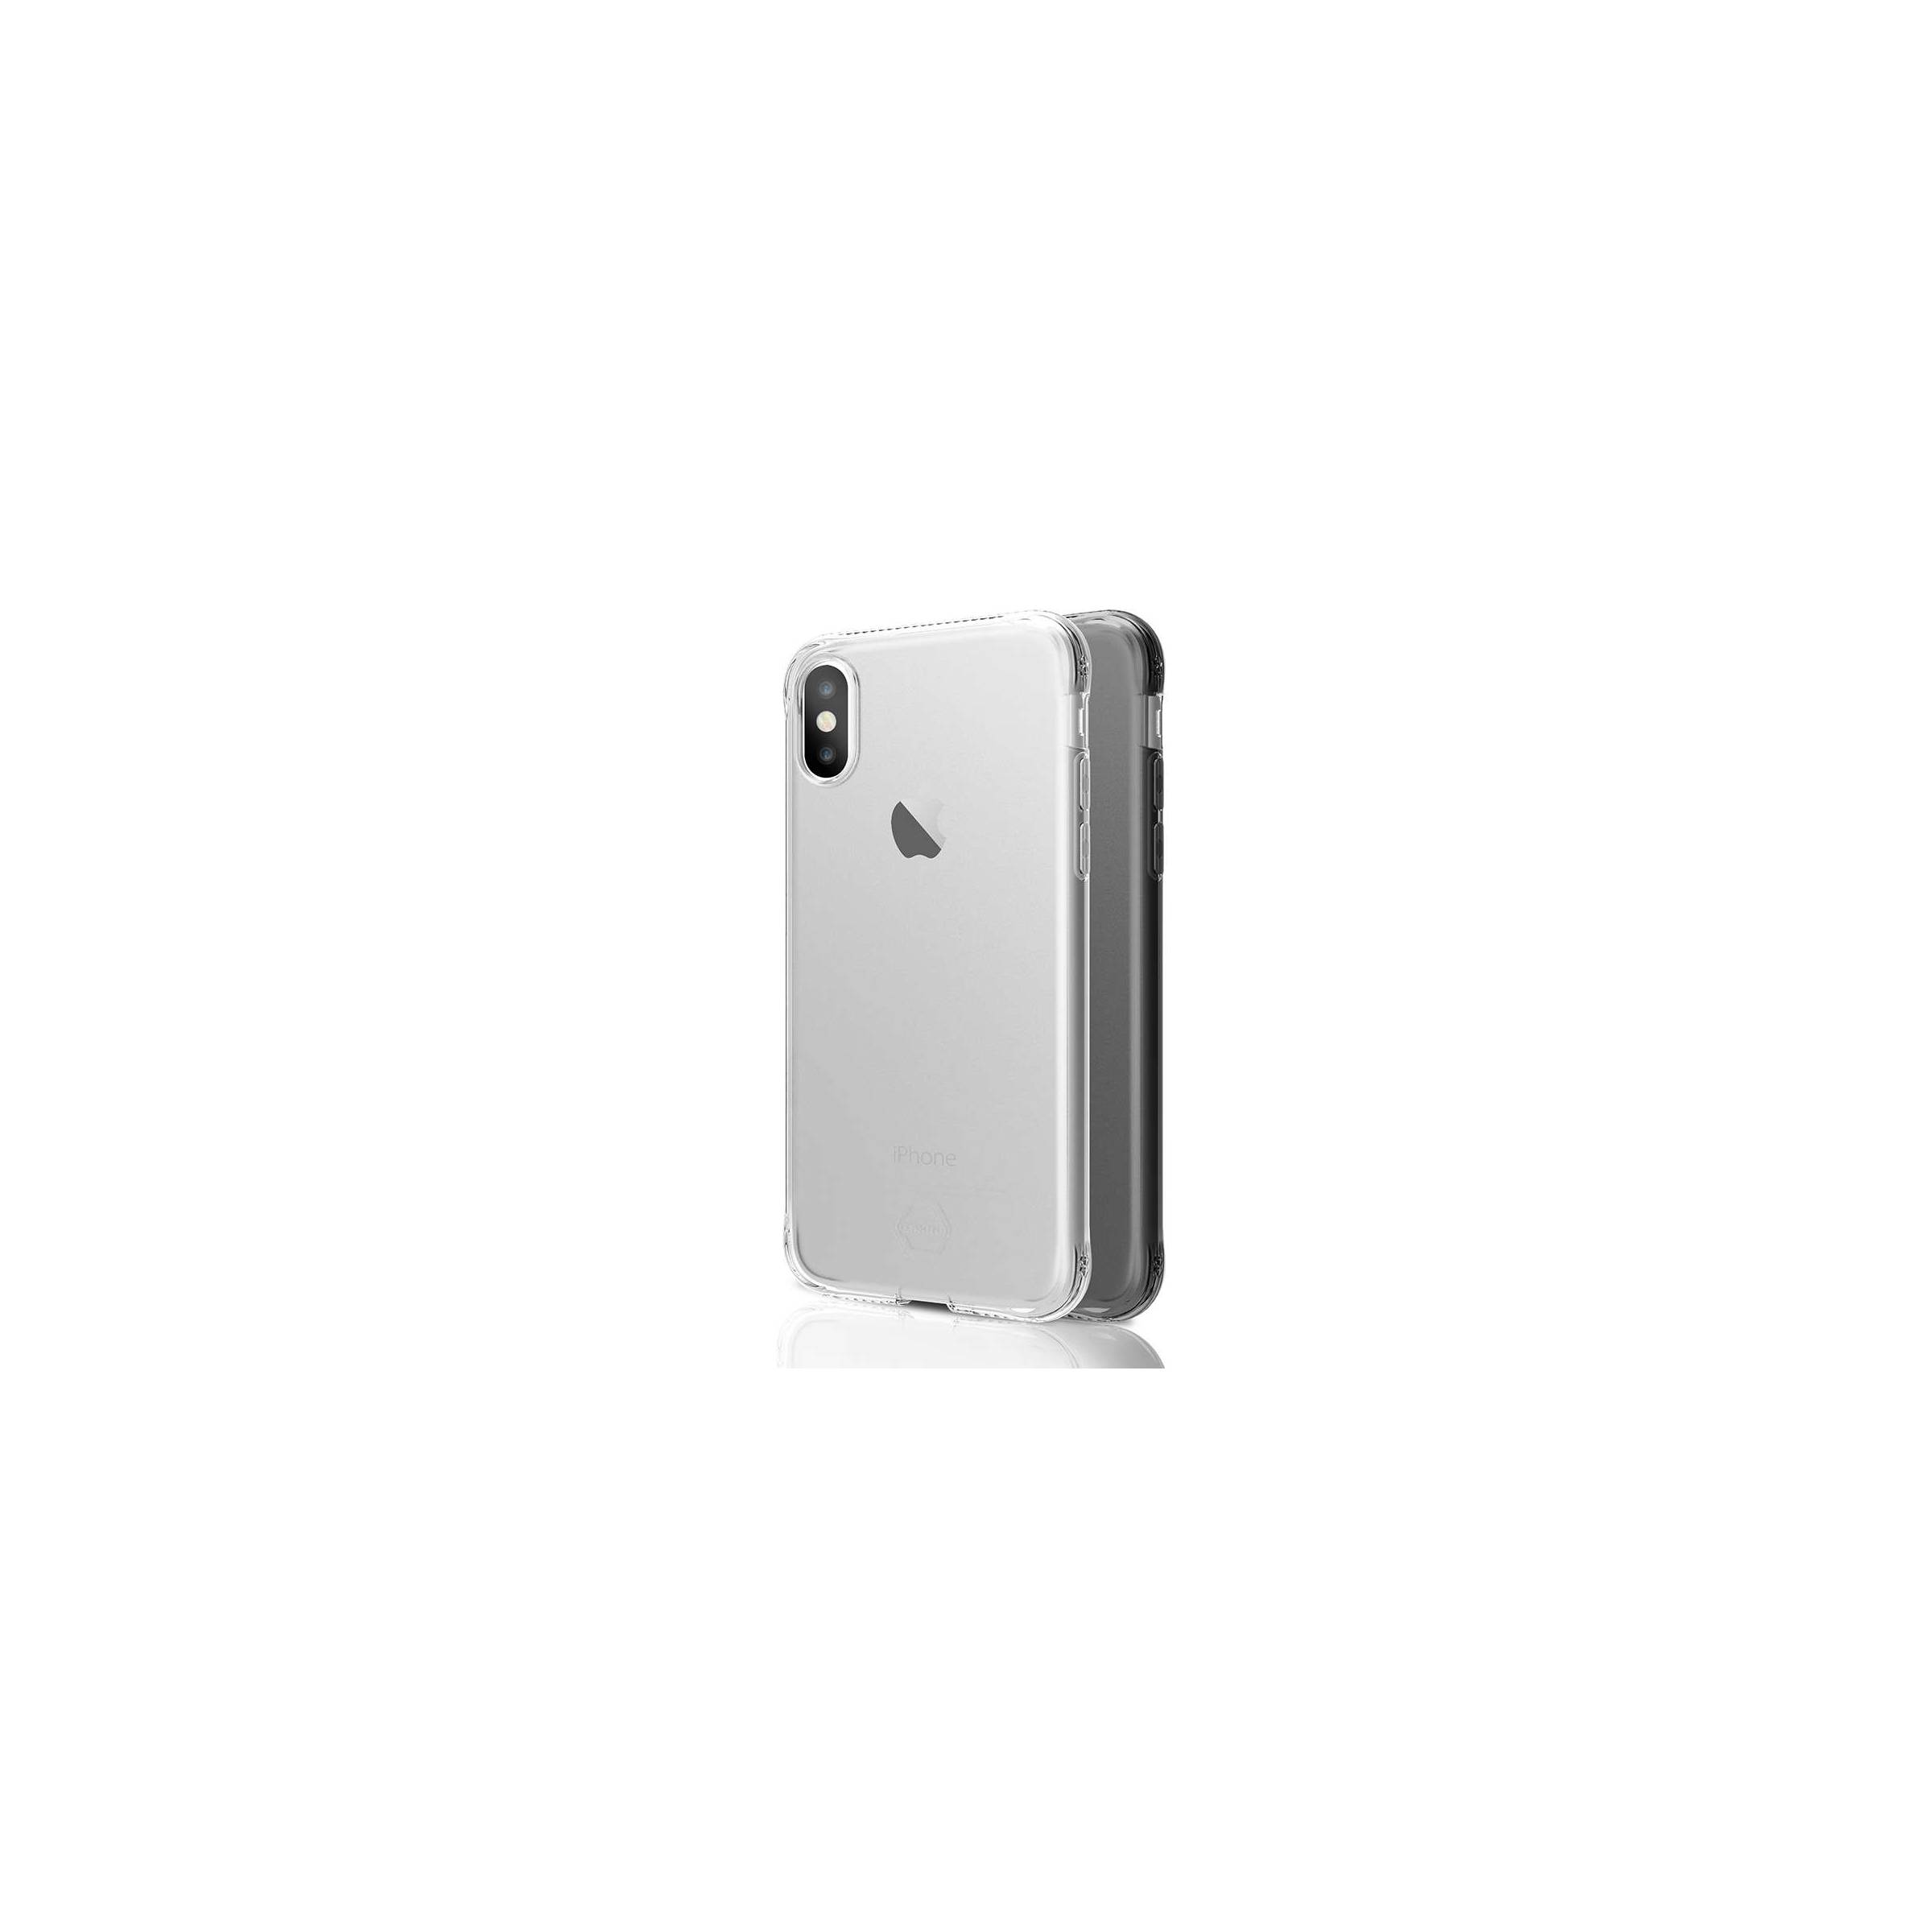 Bilde av Itskins Slim Silikon Protect Gel Iphone X/xs Deksel Dobbel 2x Pakke